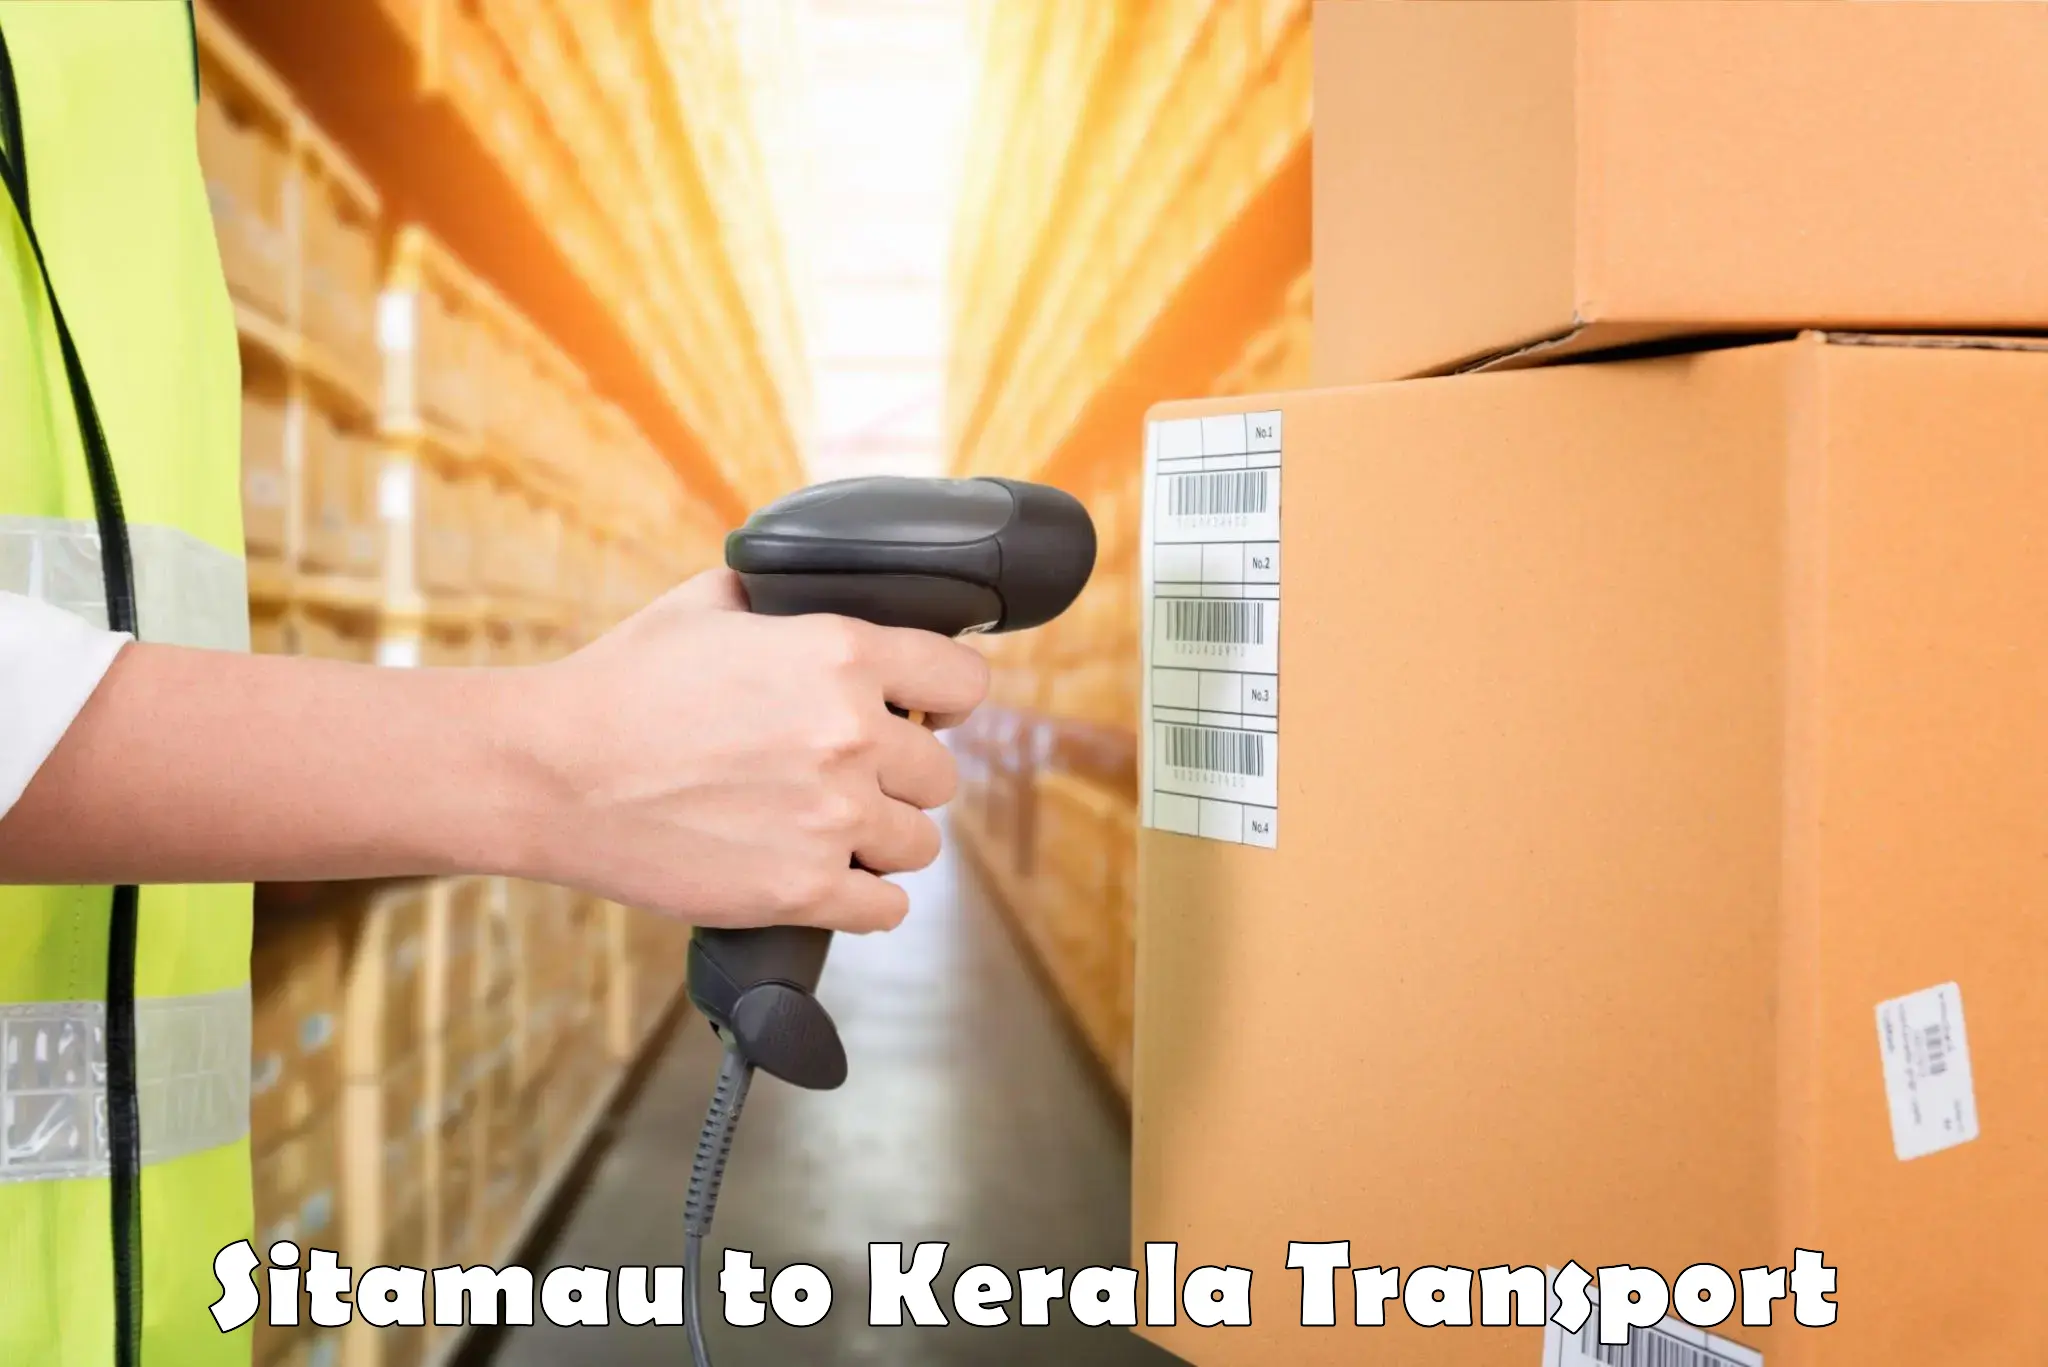 Transport in sharing Sitamau to Calicut